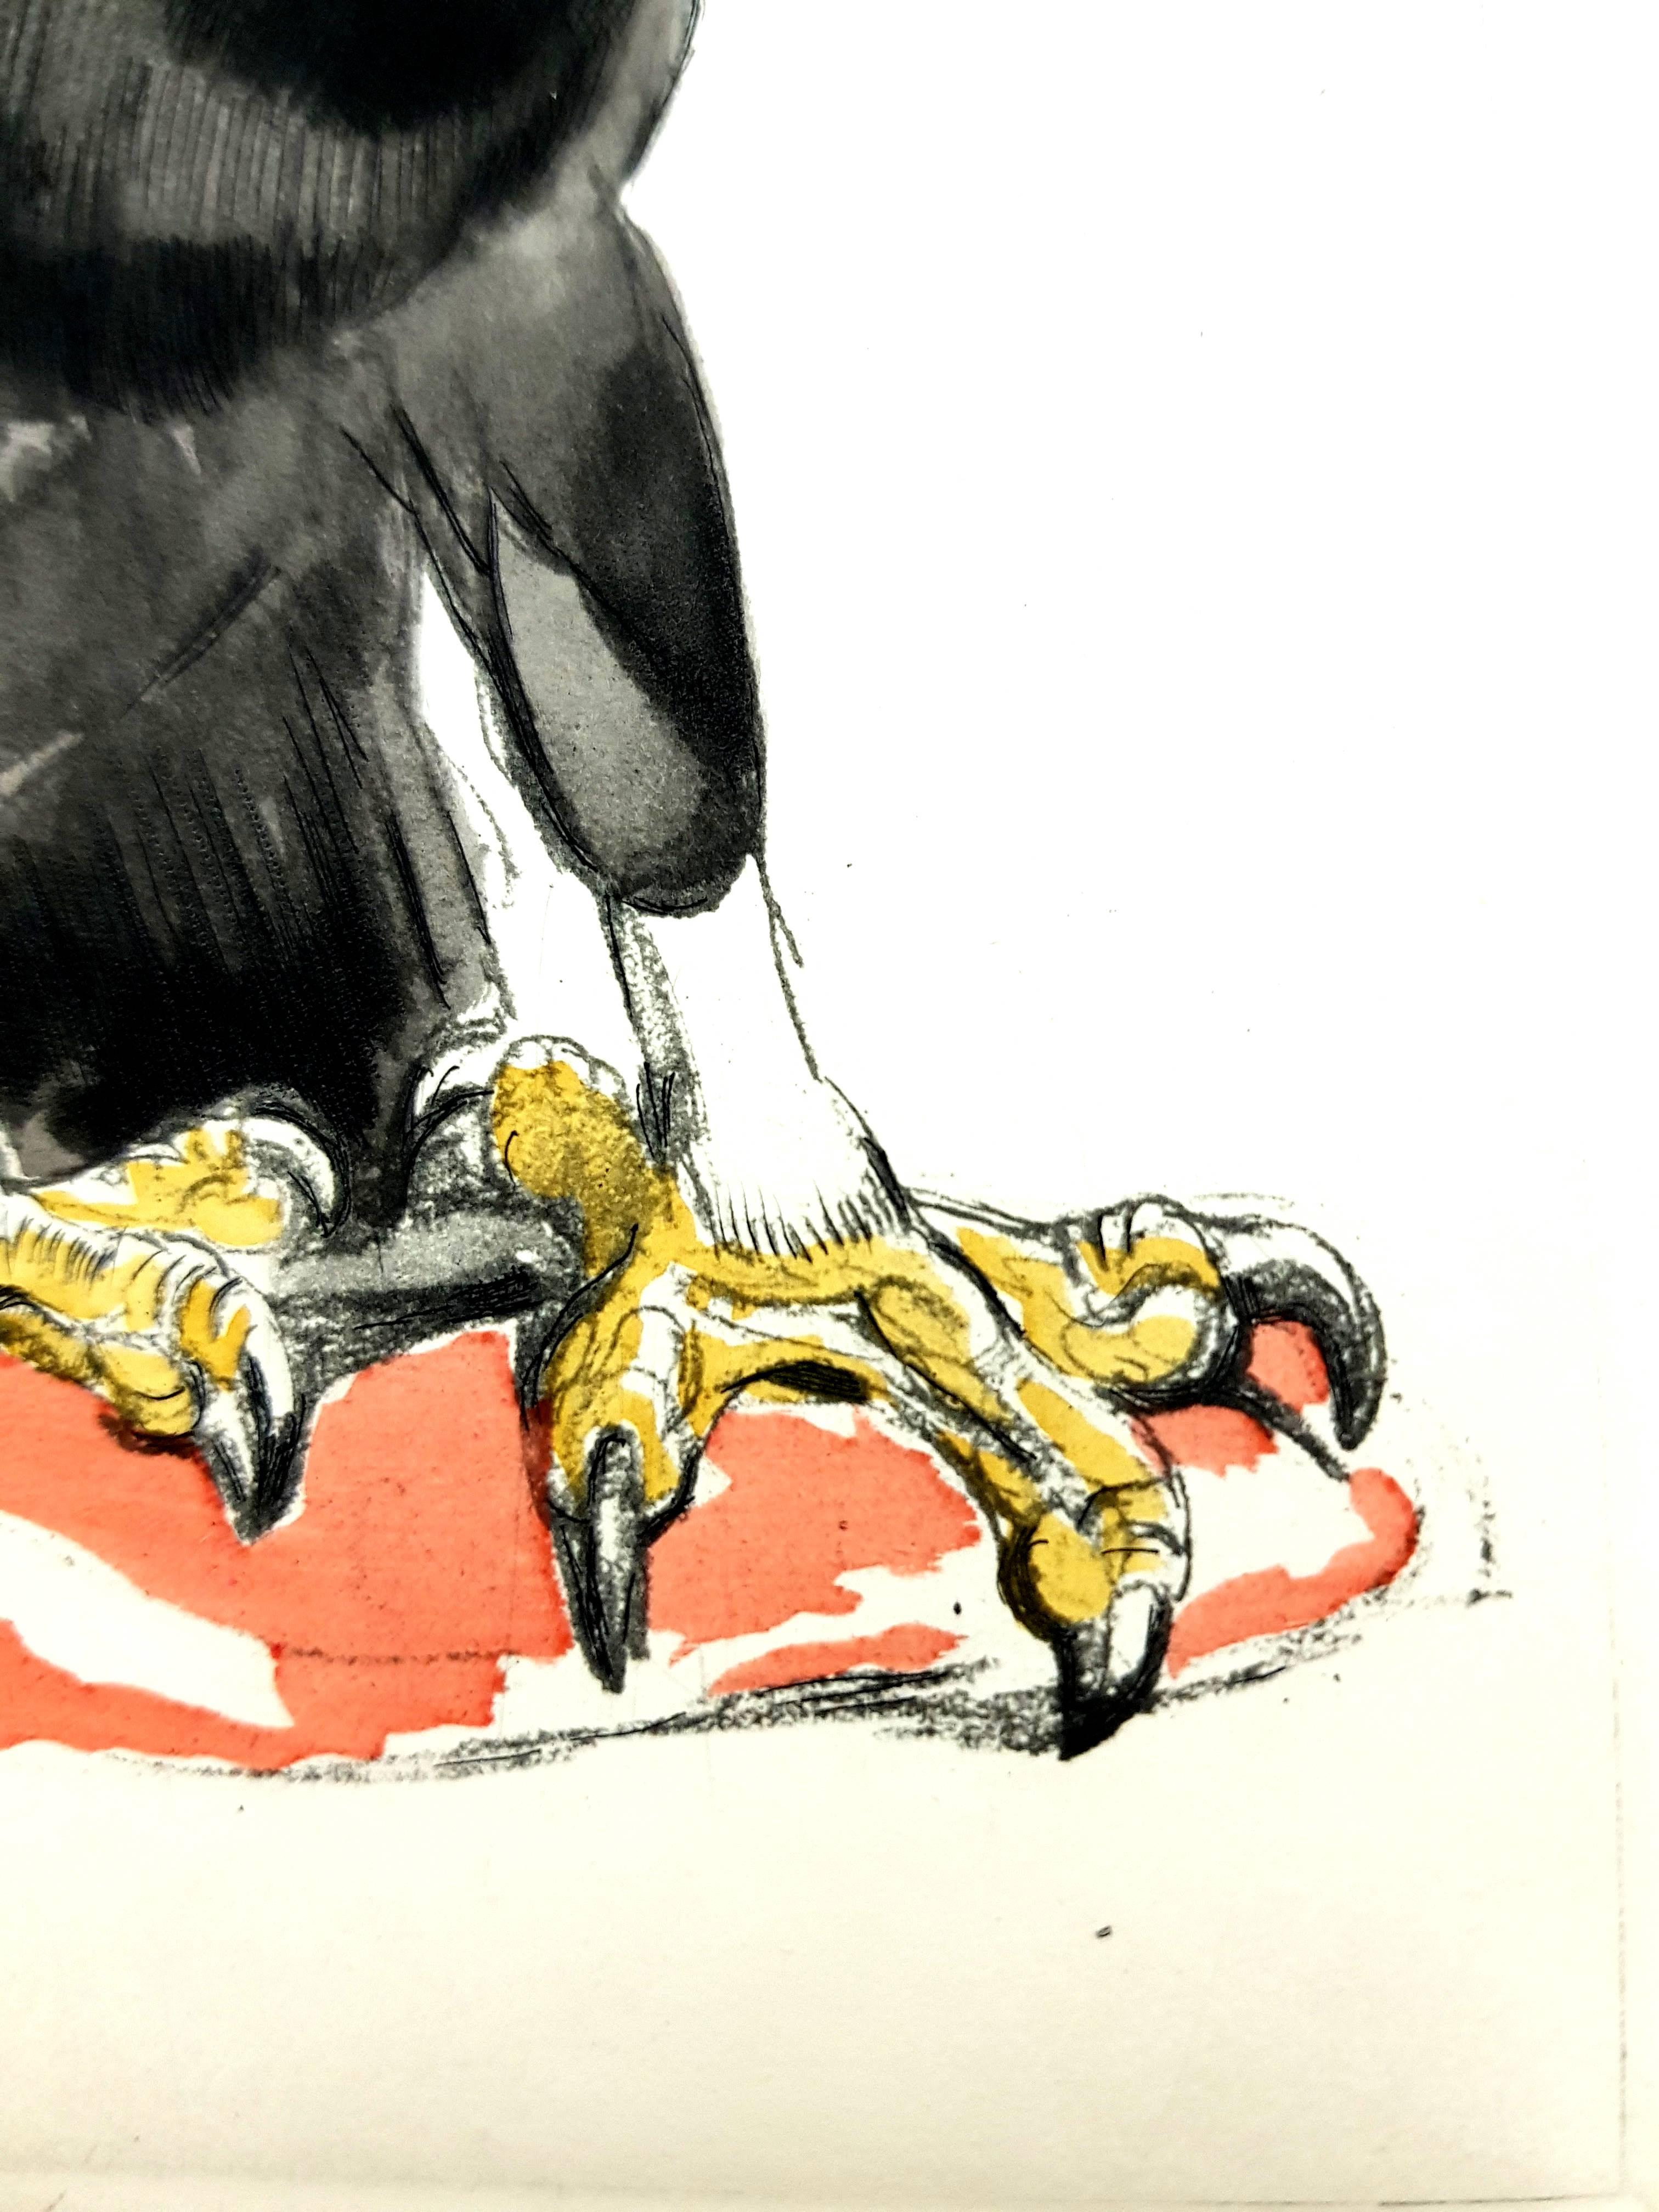 Paul Jouve - aigle - gravure originale
Editions Rombaldi, Paris, 1950. 
Copie sur velin crème de Rives
Oeuvre d'art de Paul Jouve.
Gravure originale sur cuivre rehaussée de pochoir. 

Paul Jouve, considéré comme l'un des plus célèbres peintres